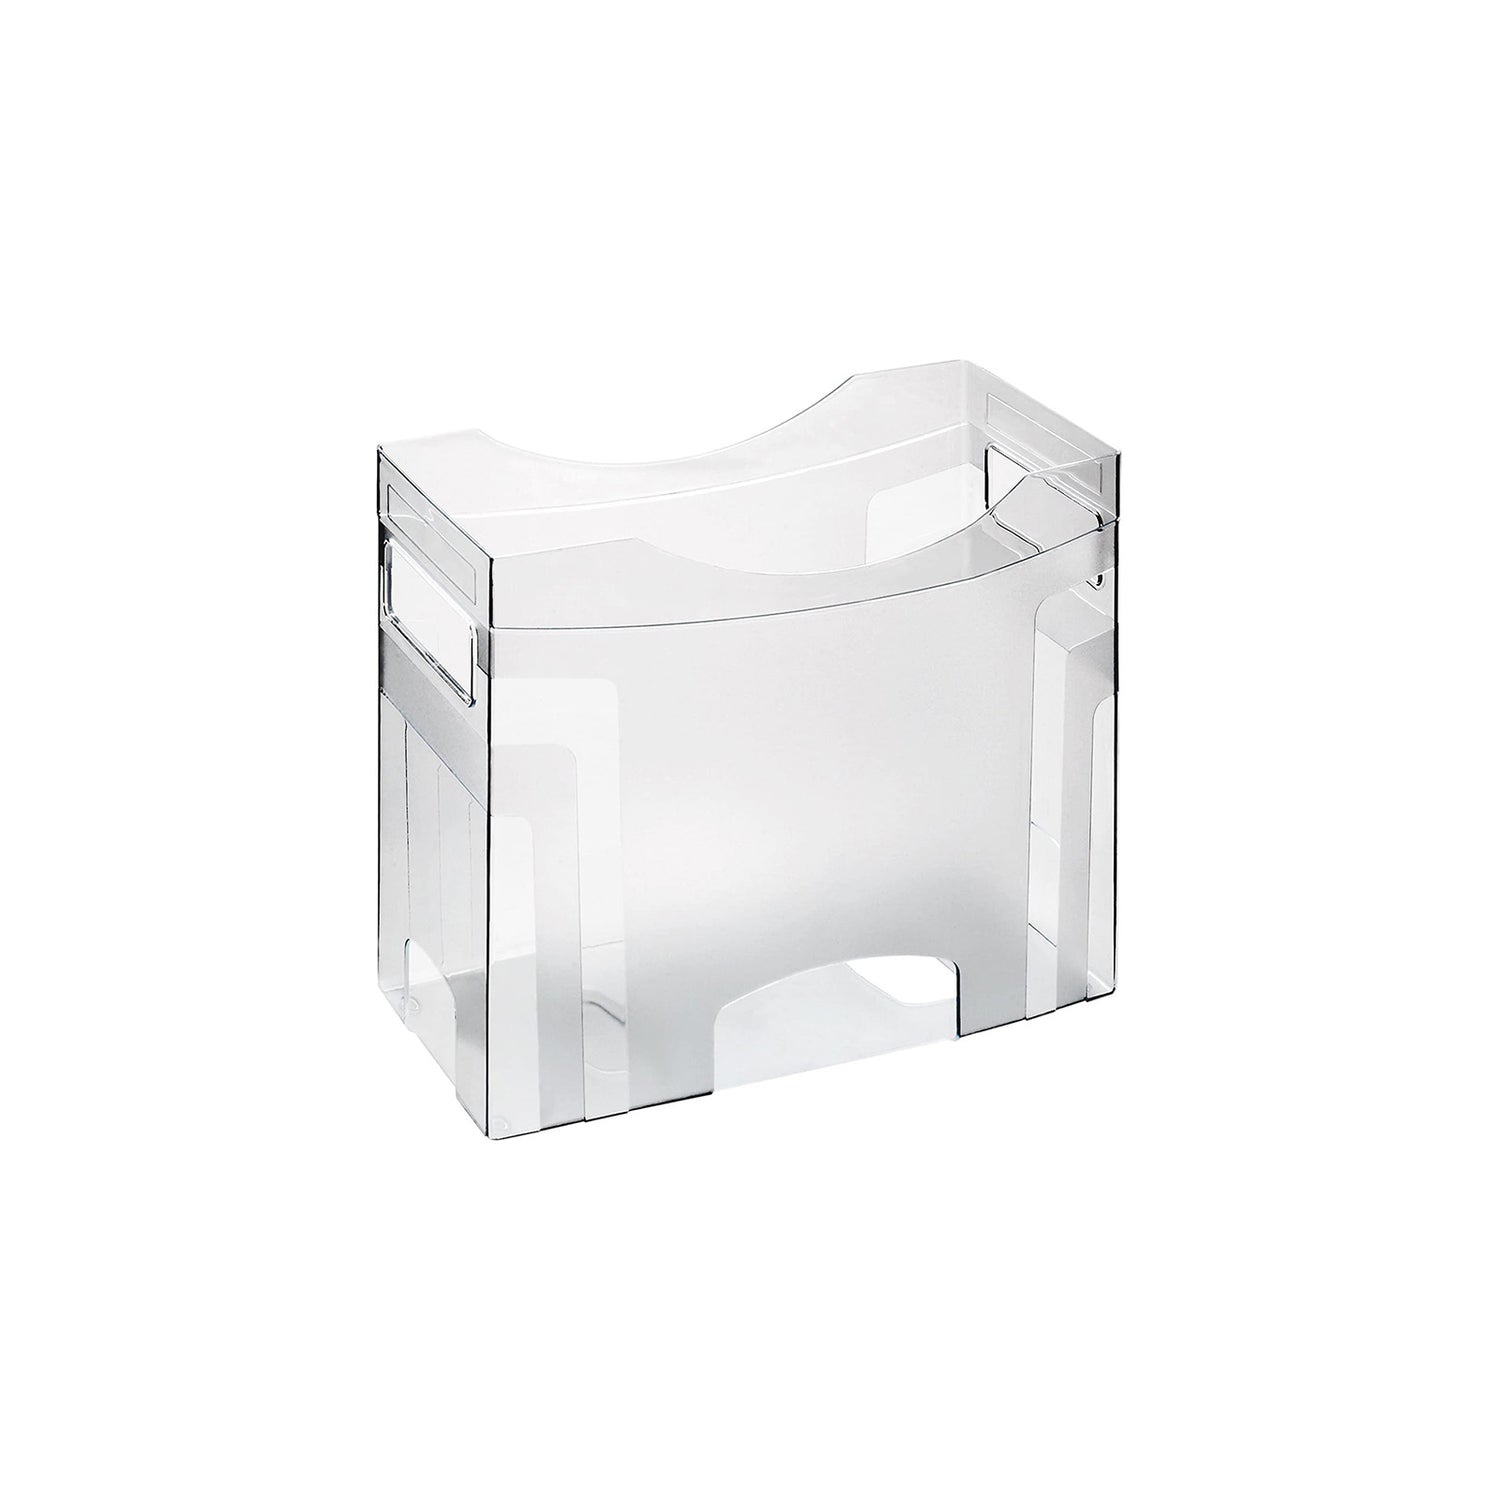 Hängemappenbox Cube